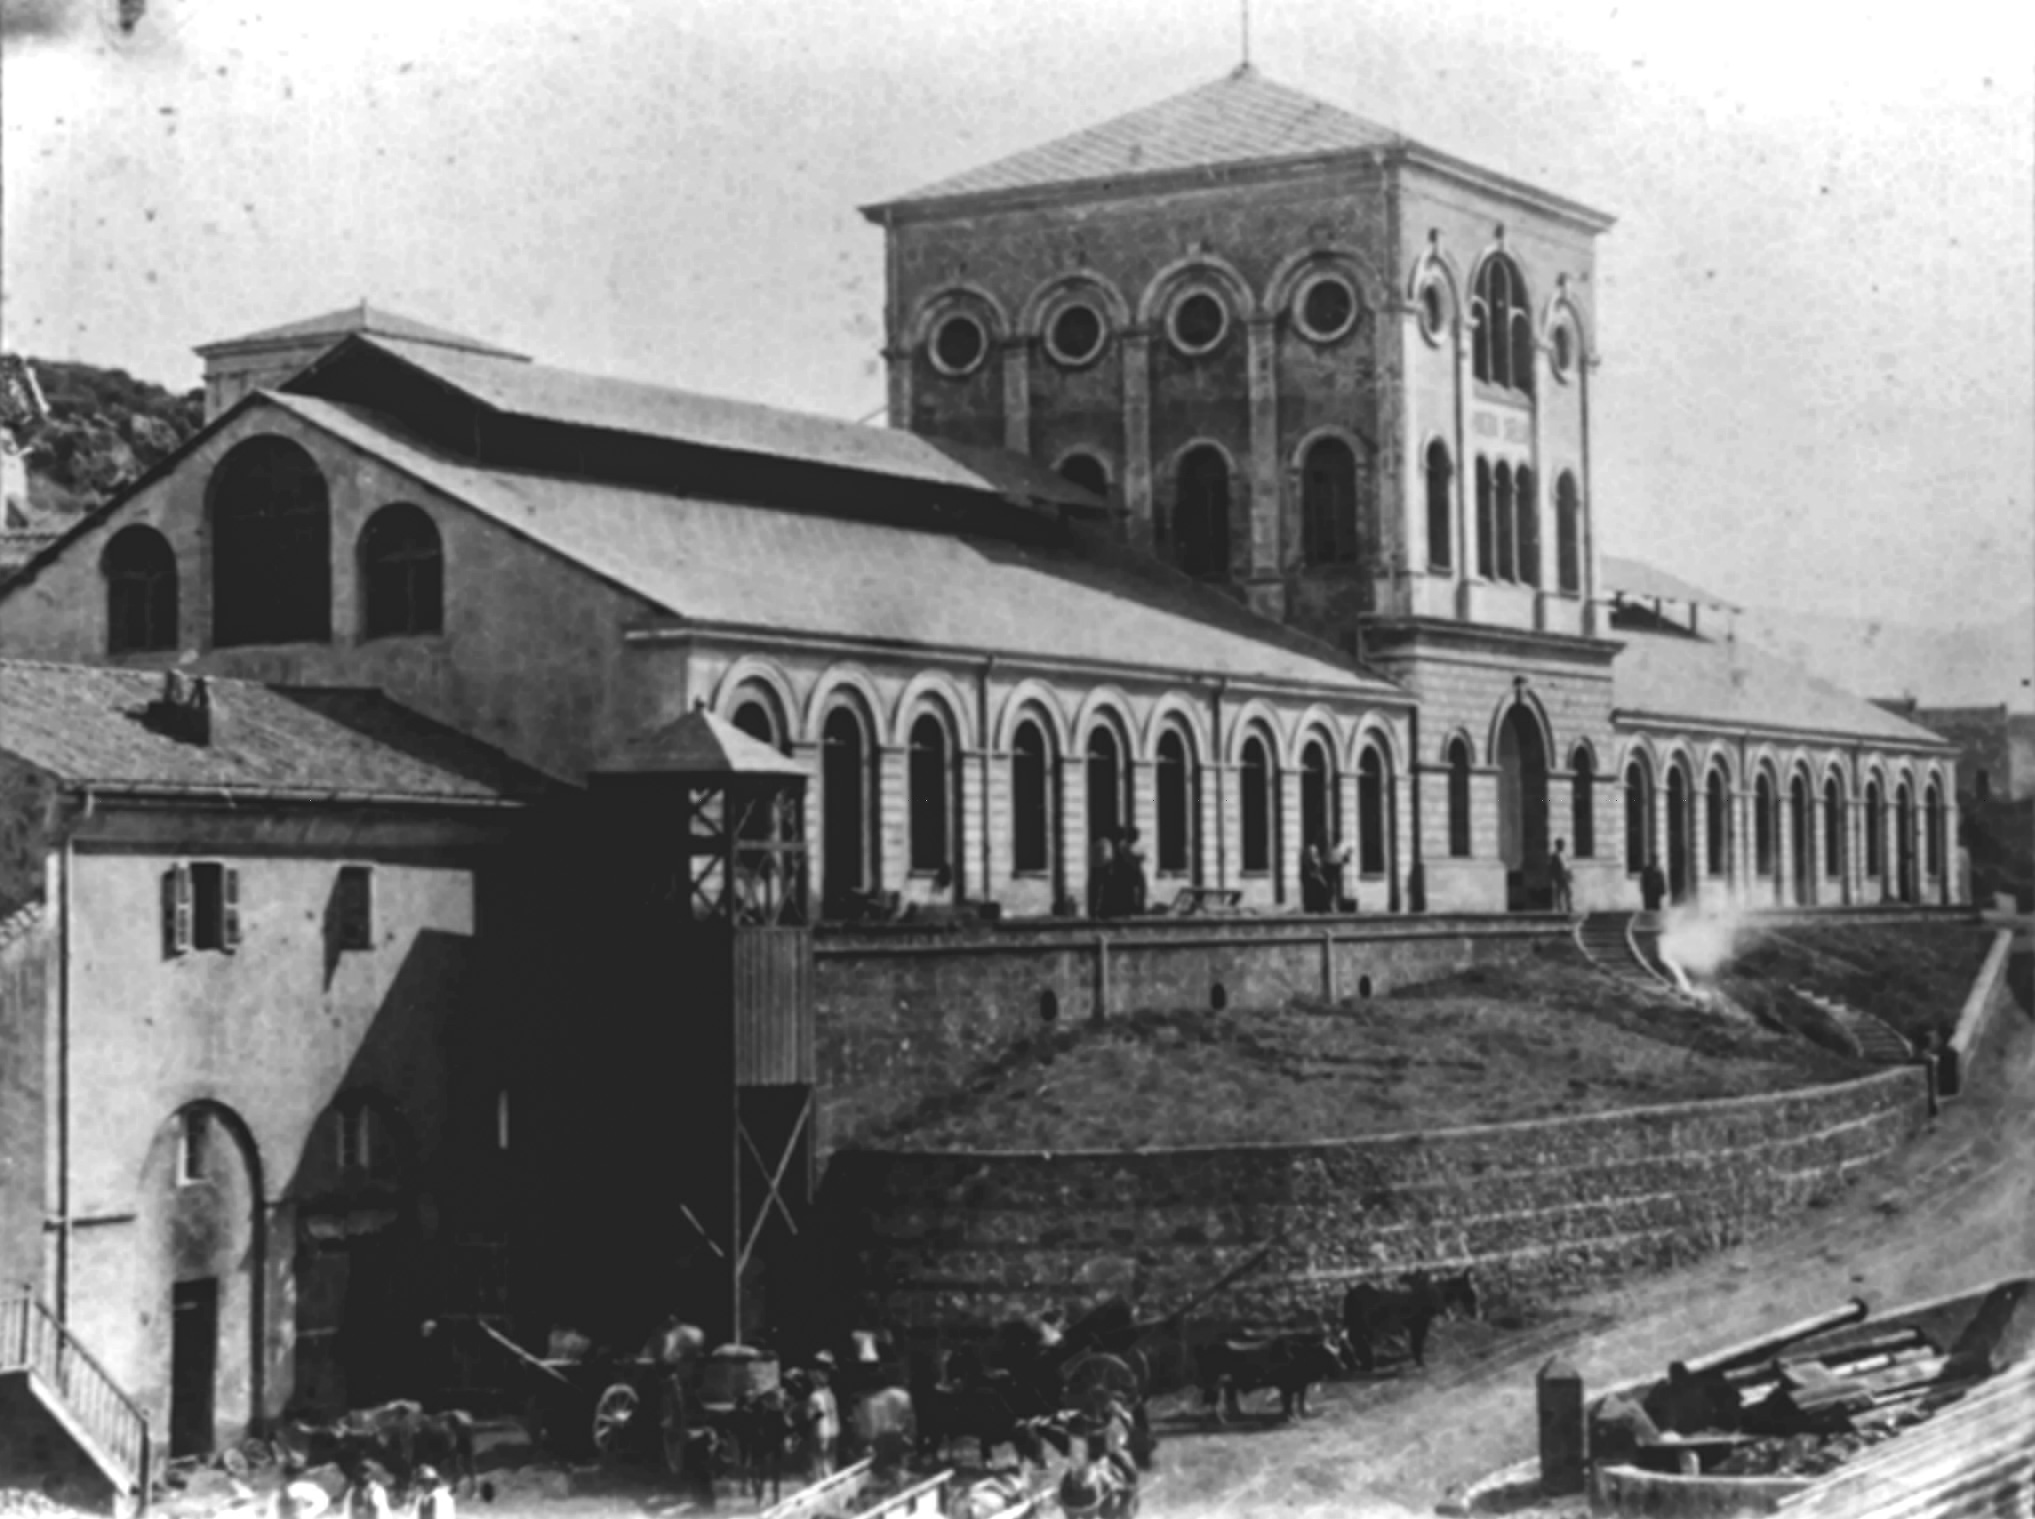 Pozzo sella building in 1875